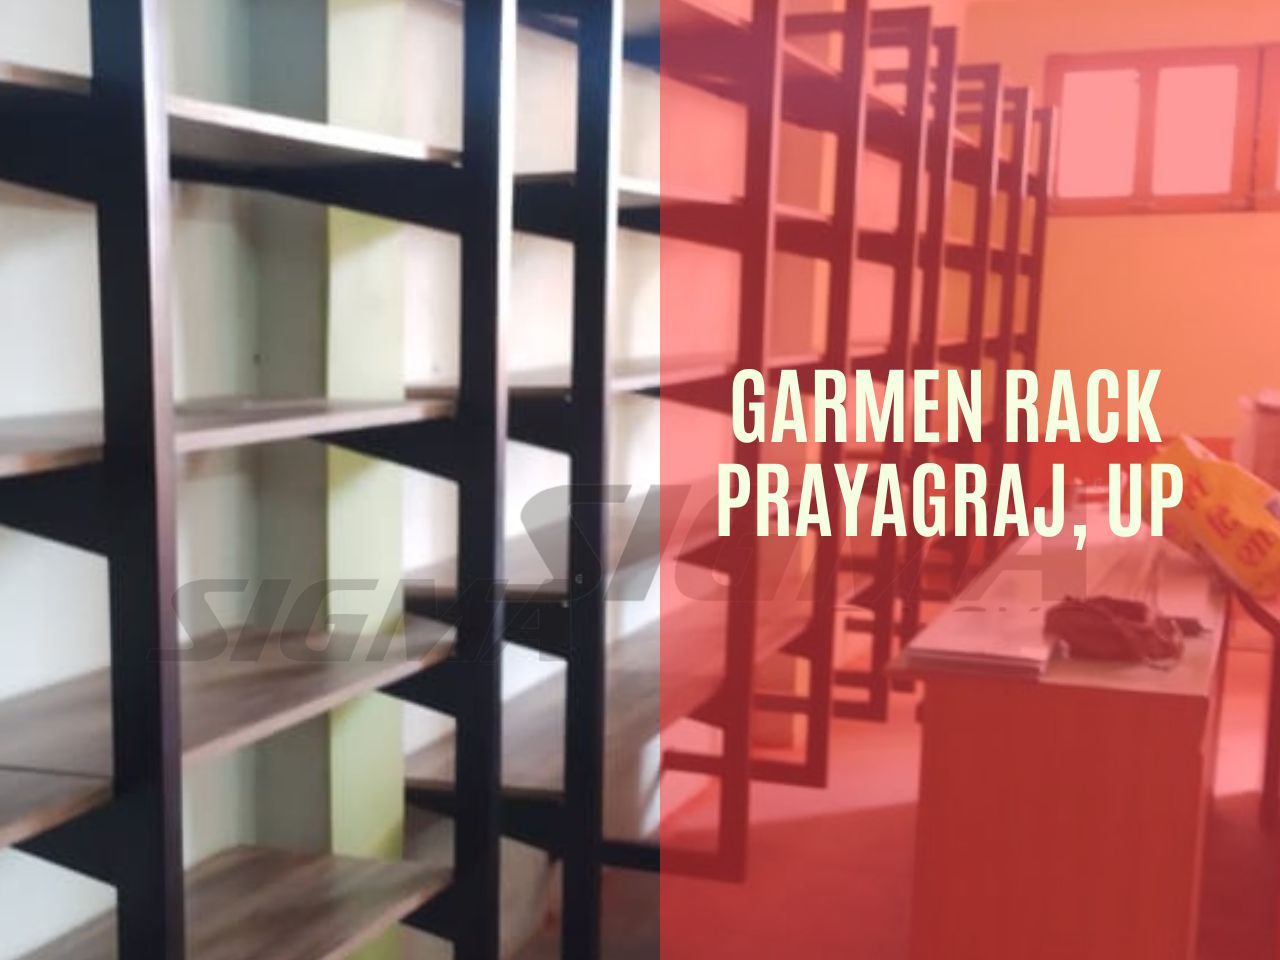 Garment Rack, prayagraj (1).jpg